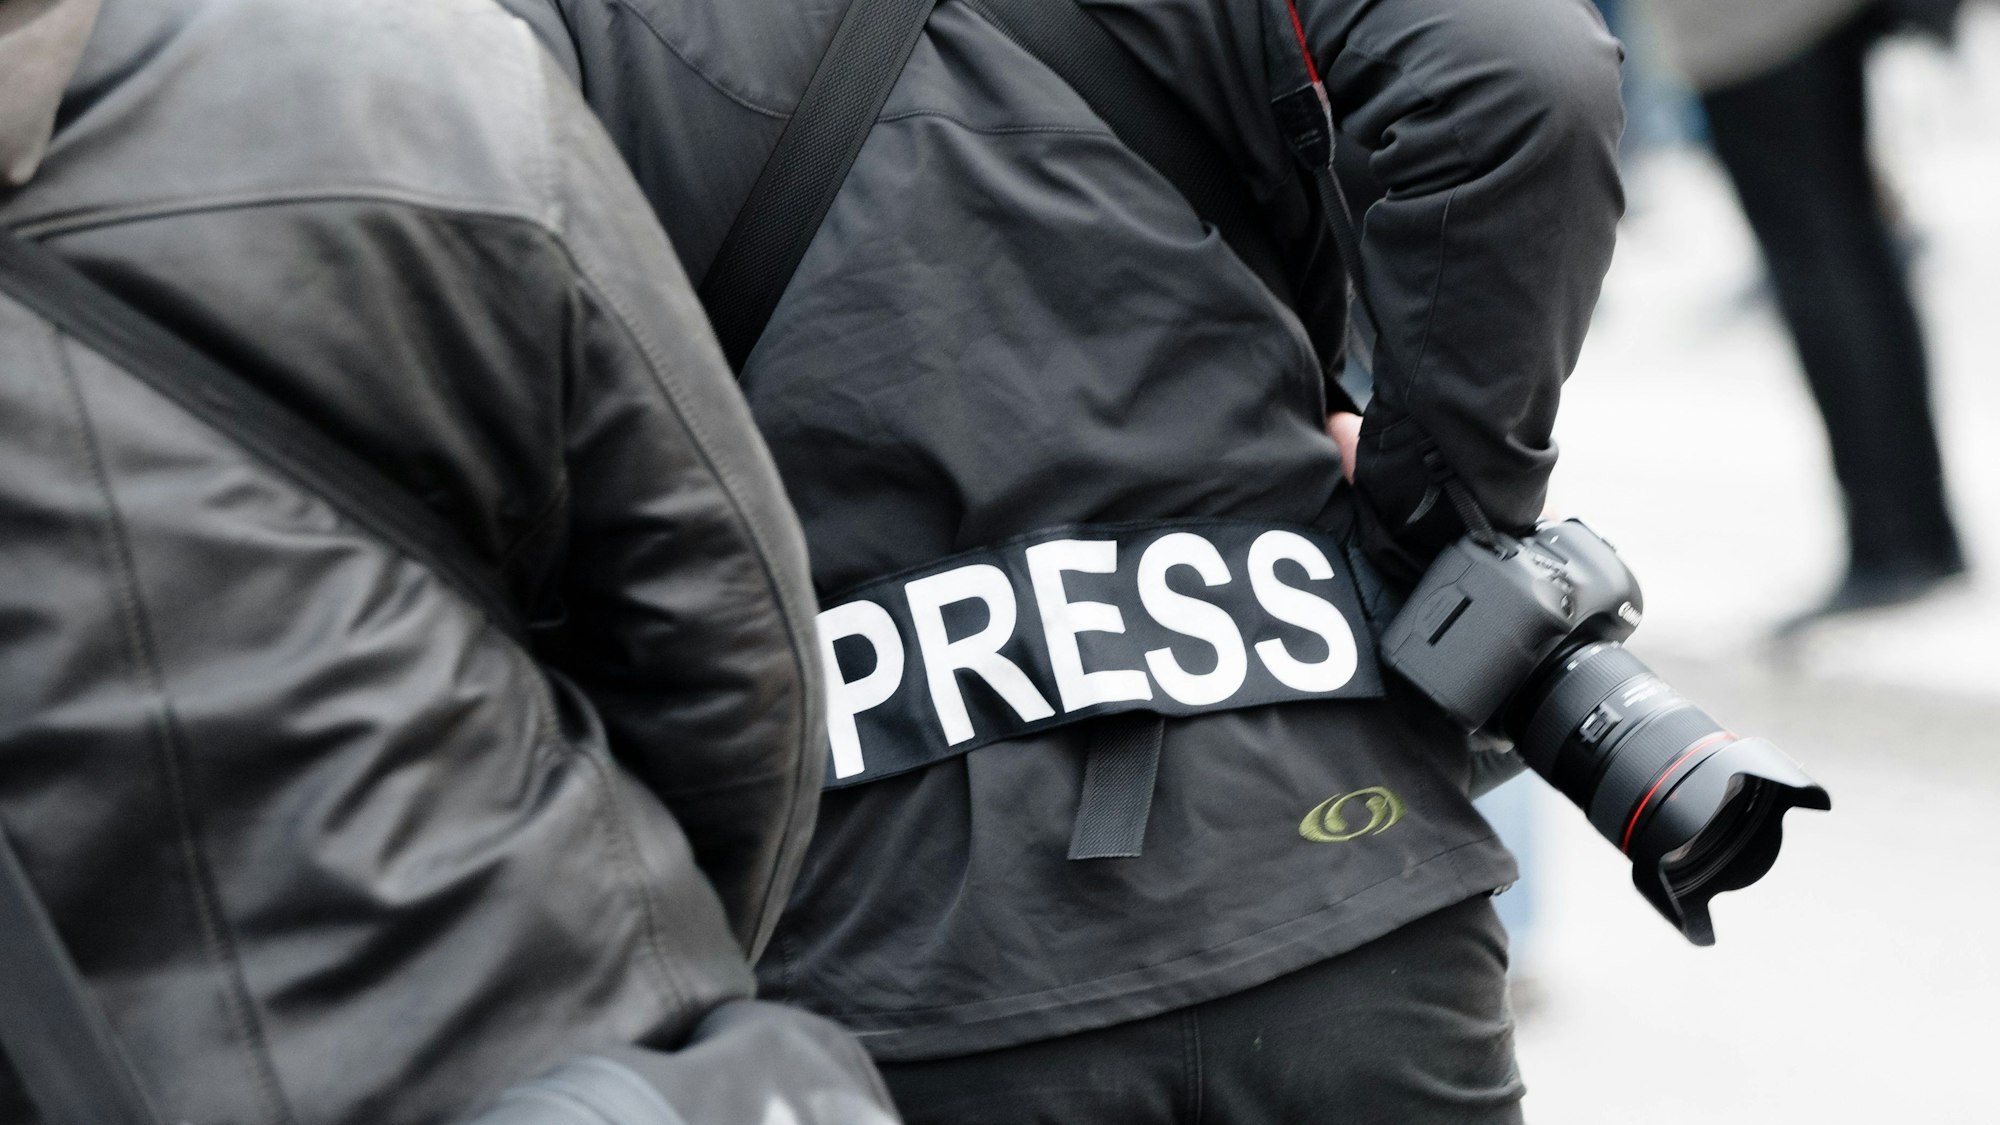 Ein Fotoreporter trägt auf einer Demonstration einen Aufnäher mit dem Text «PRESS» auf seiner Jacke, um sich gegenüber Polizei und Demonstranten als Journalist zu kennzeichnen.